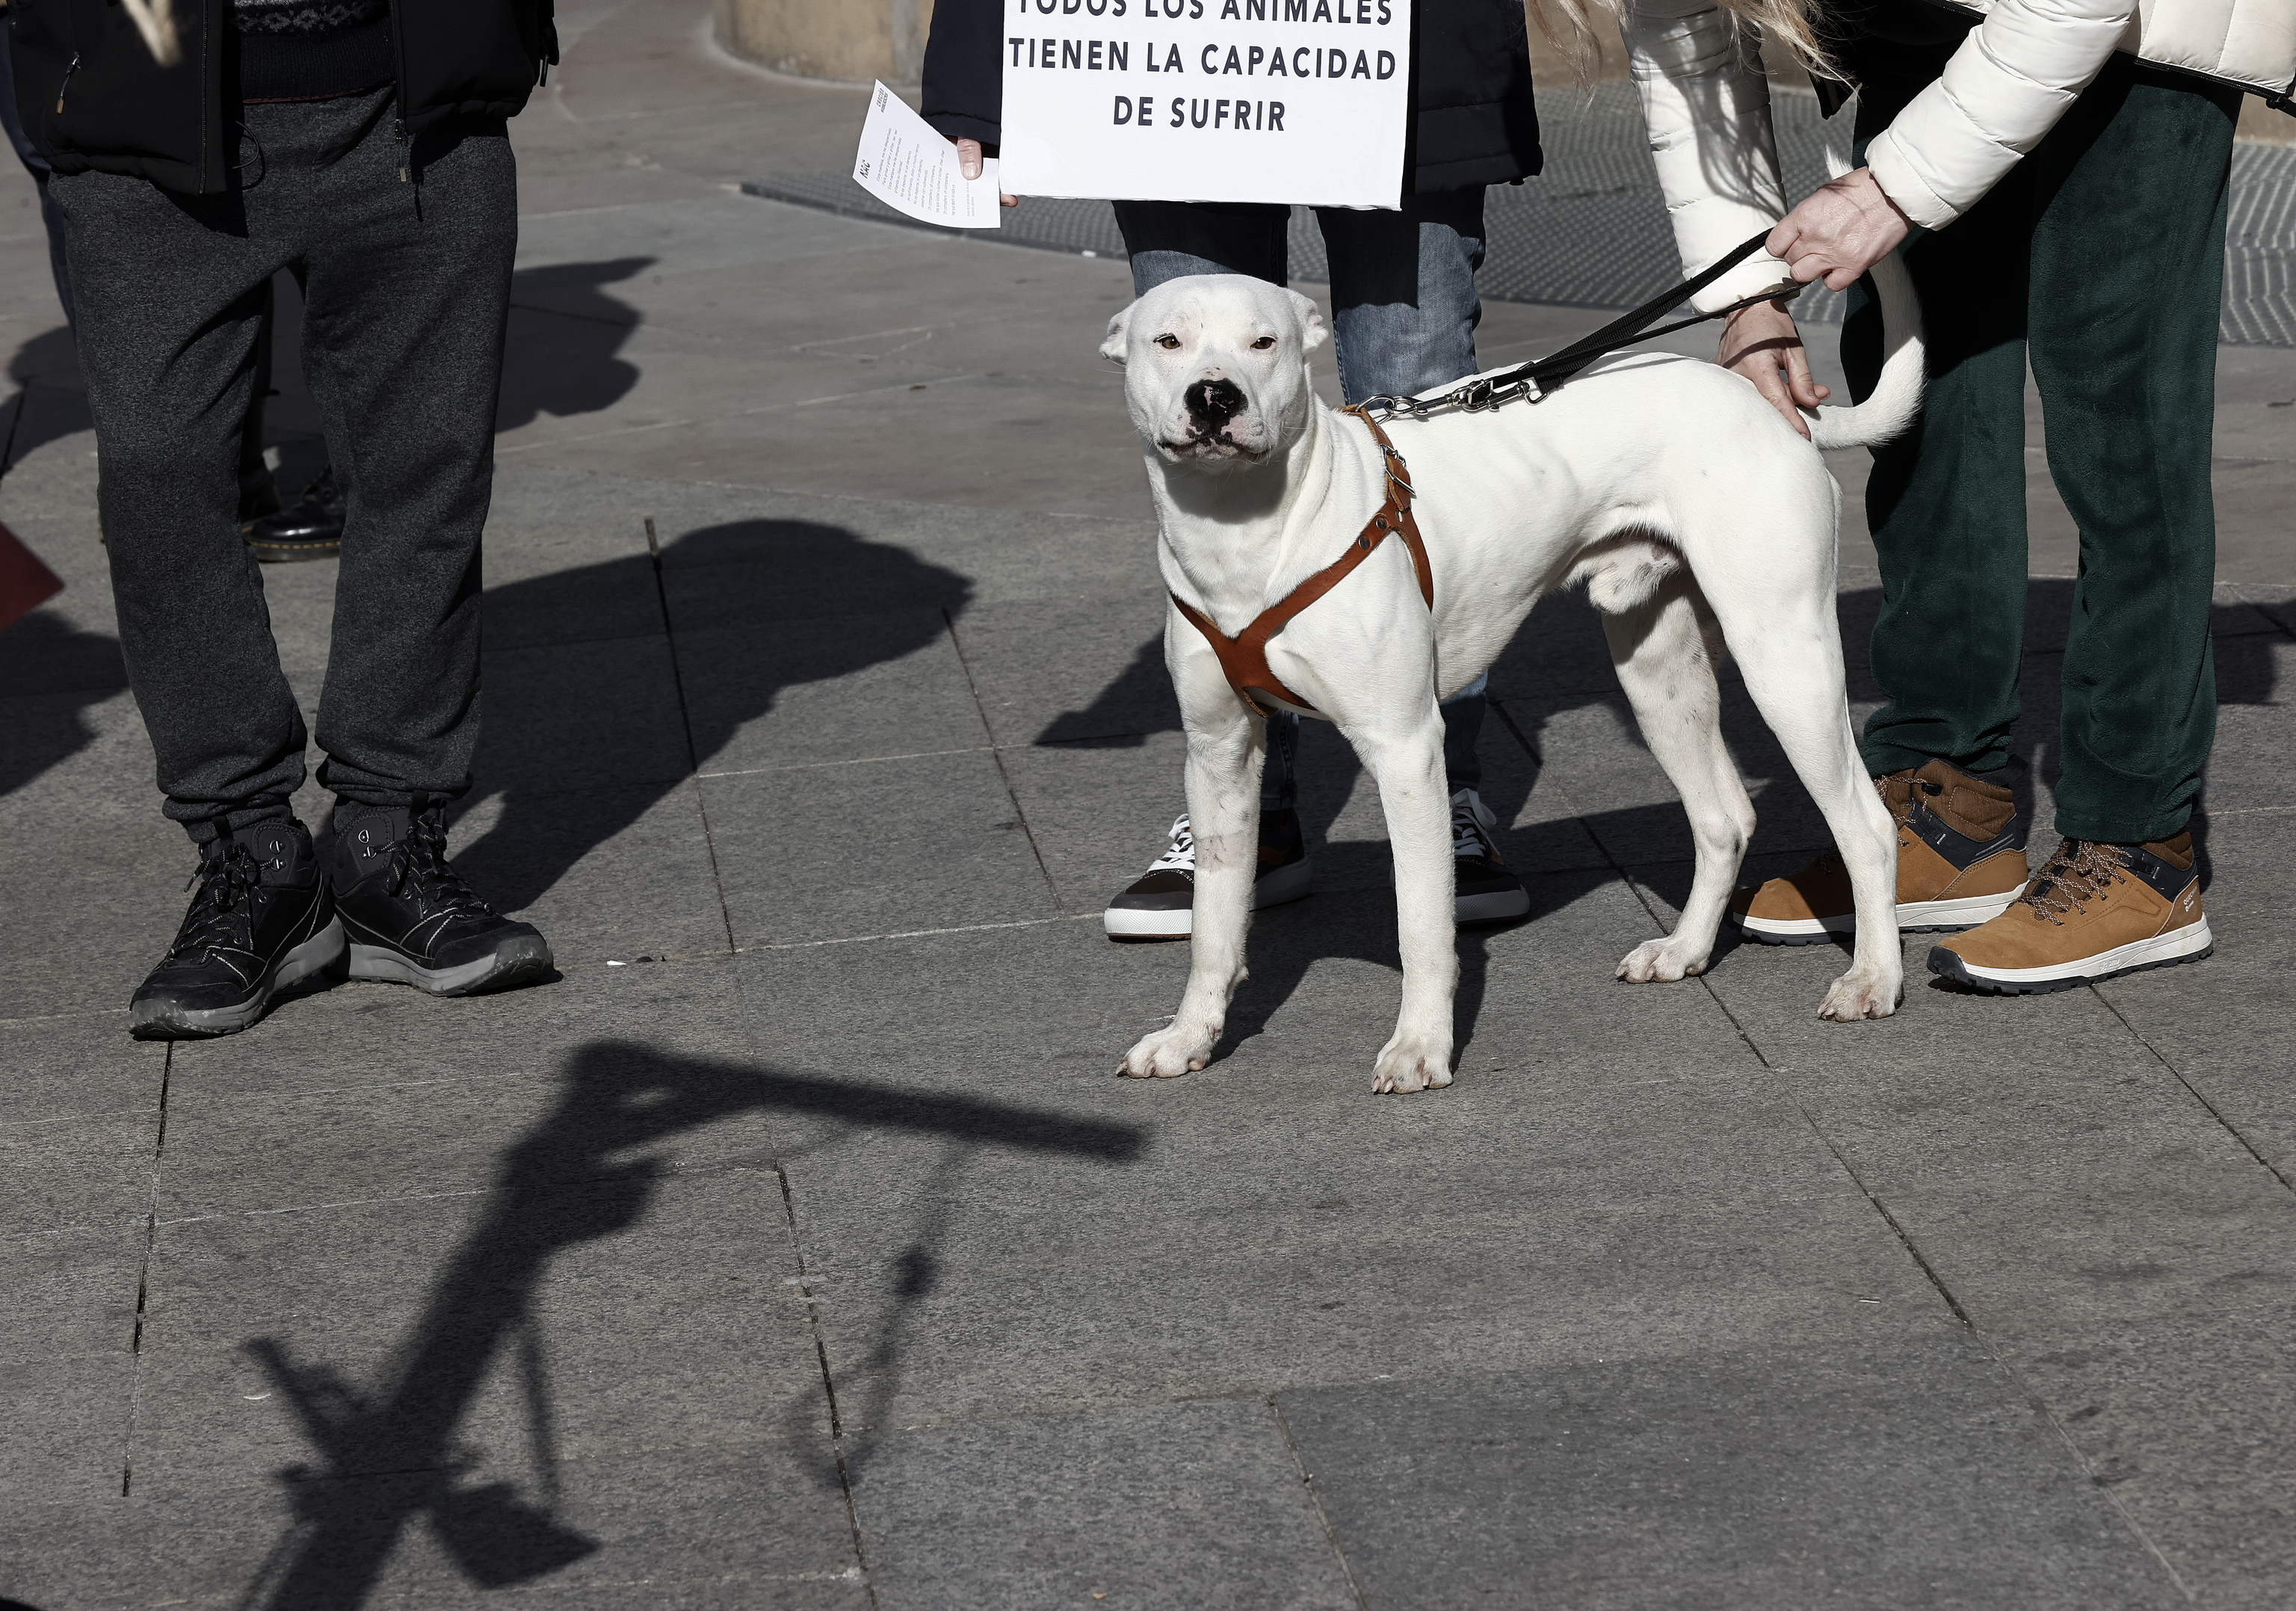 Imagen de una manifestación animalista en Pamplona.